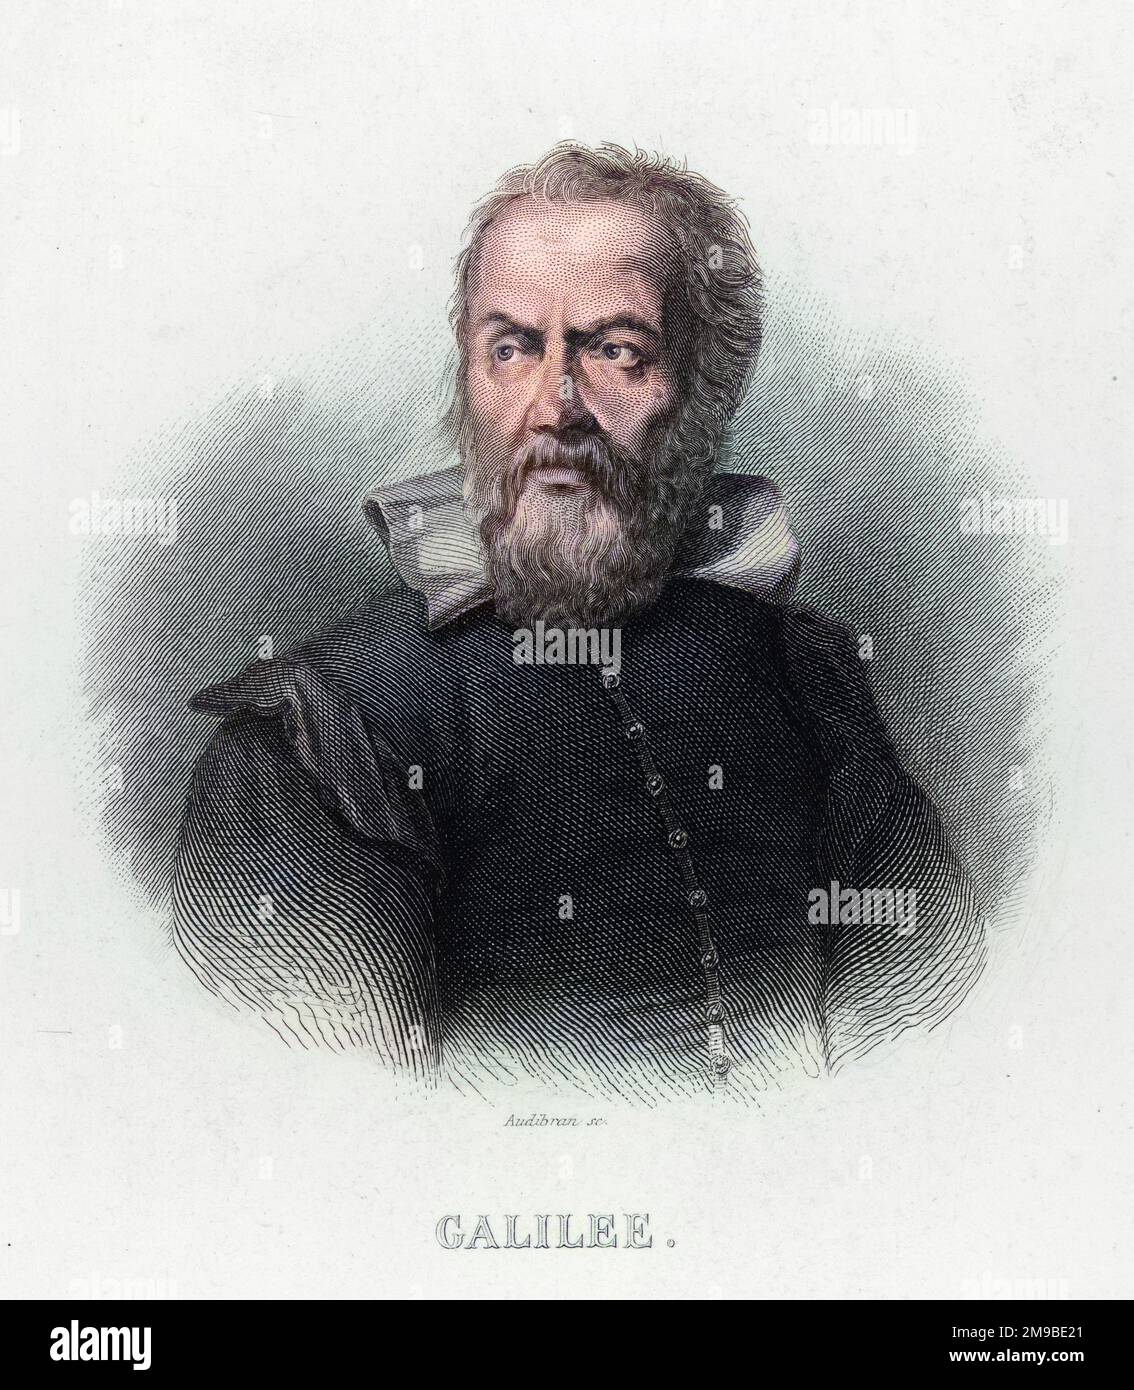 Galileo Galilei (1564-1642), il fisico italiano, matematico, astronomo e filosofo. Egli ha avuto difficoltà con la chiesa oltre la sua affermazione che il sole e non la terra, è al centro dell'universo. Foto Stock